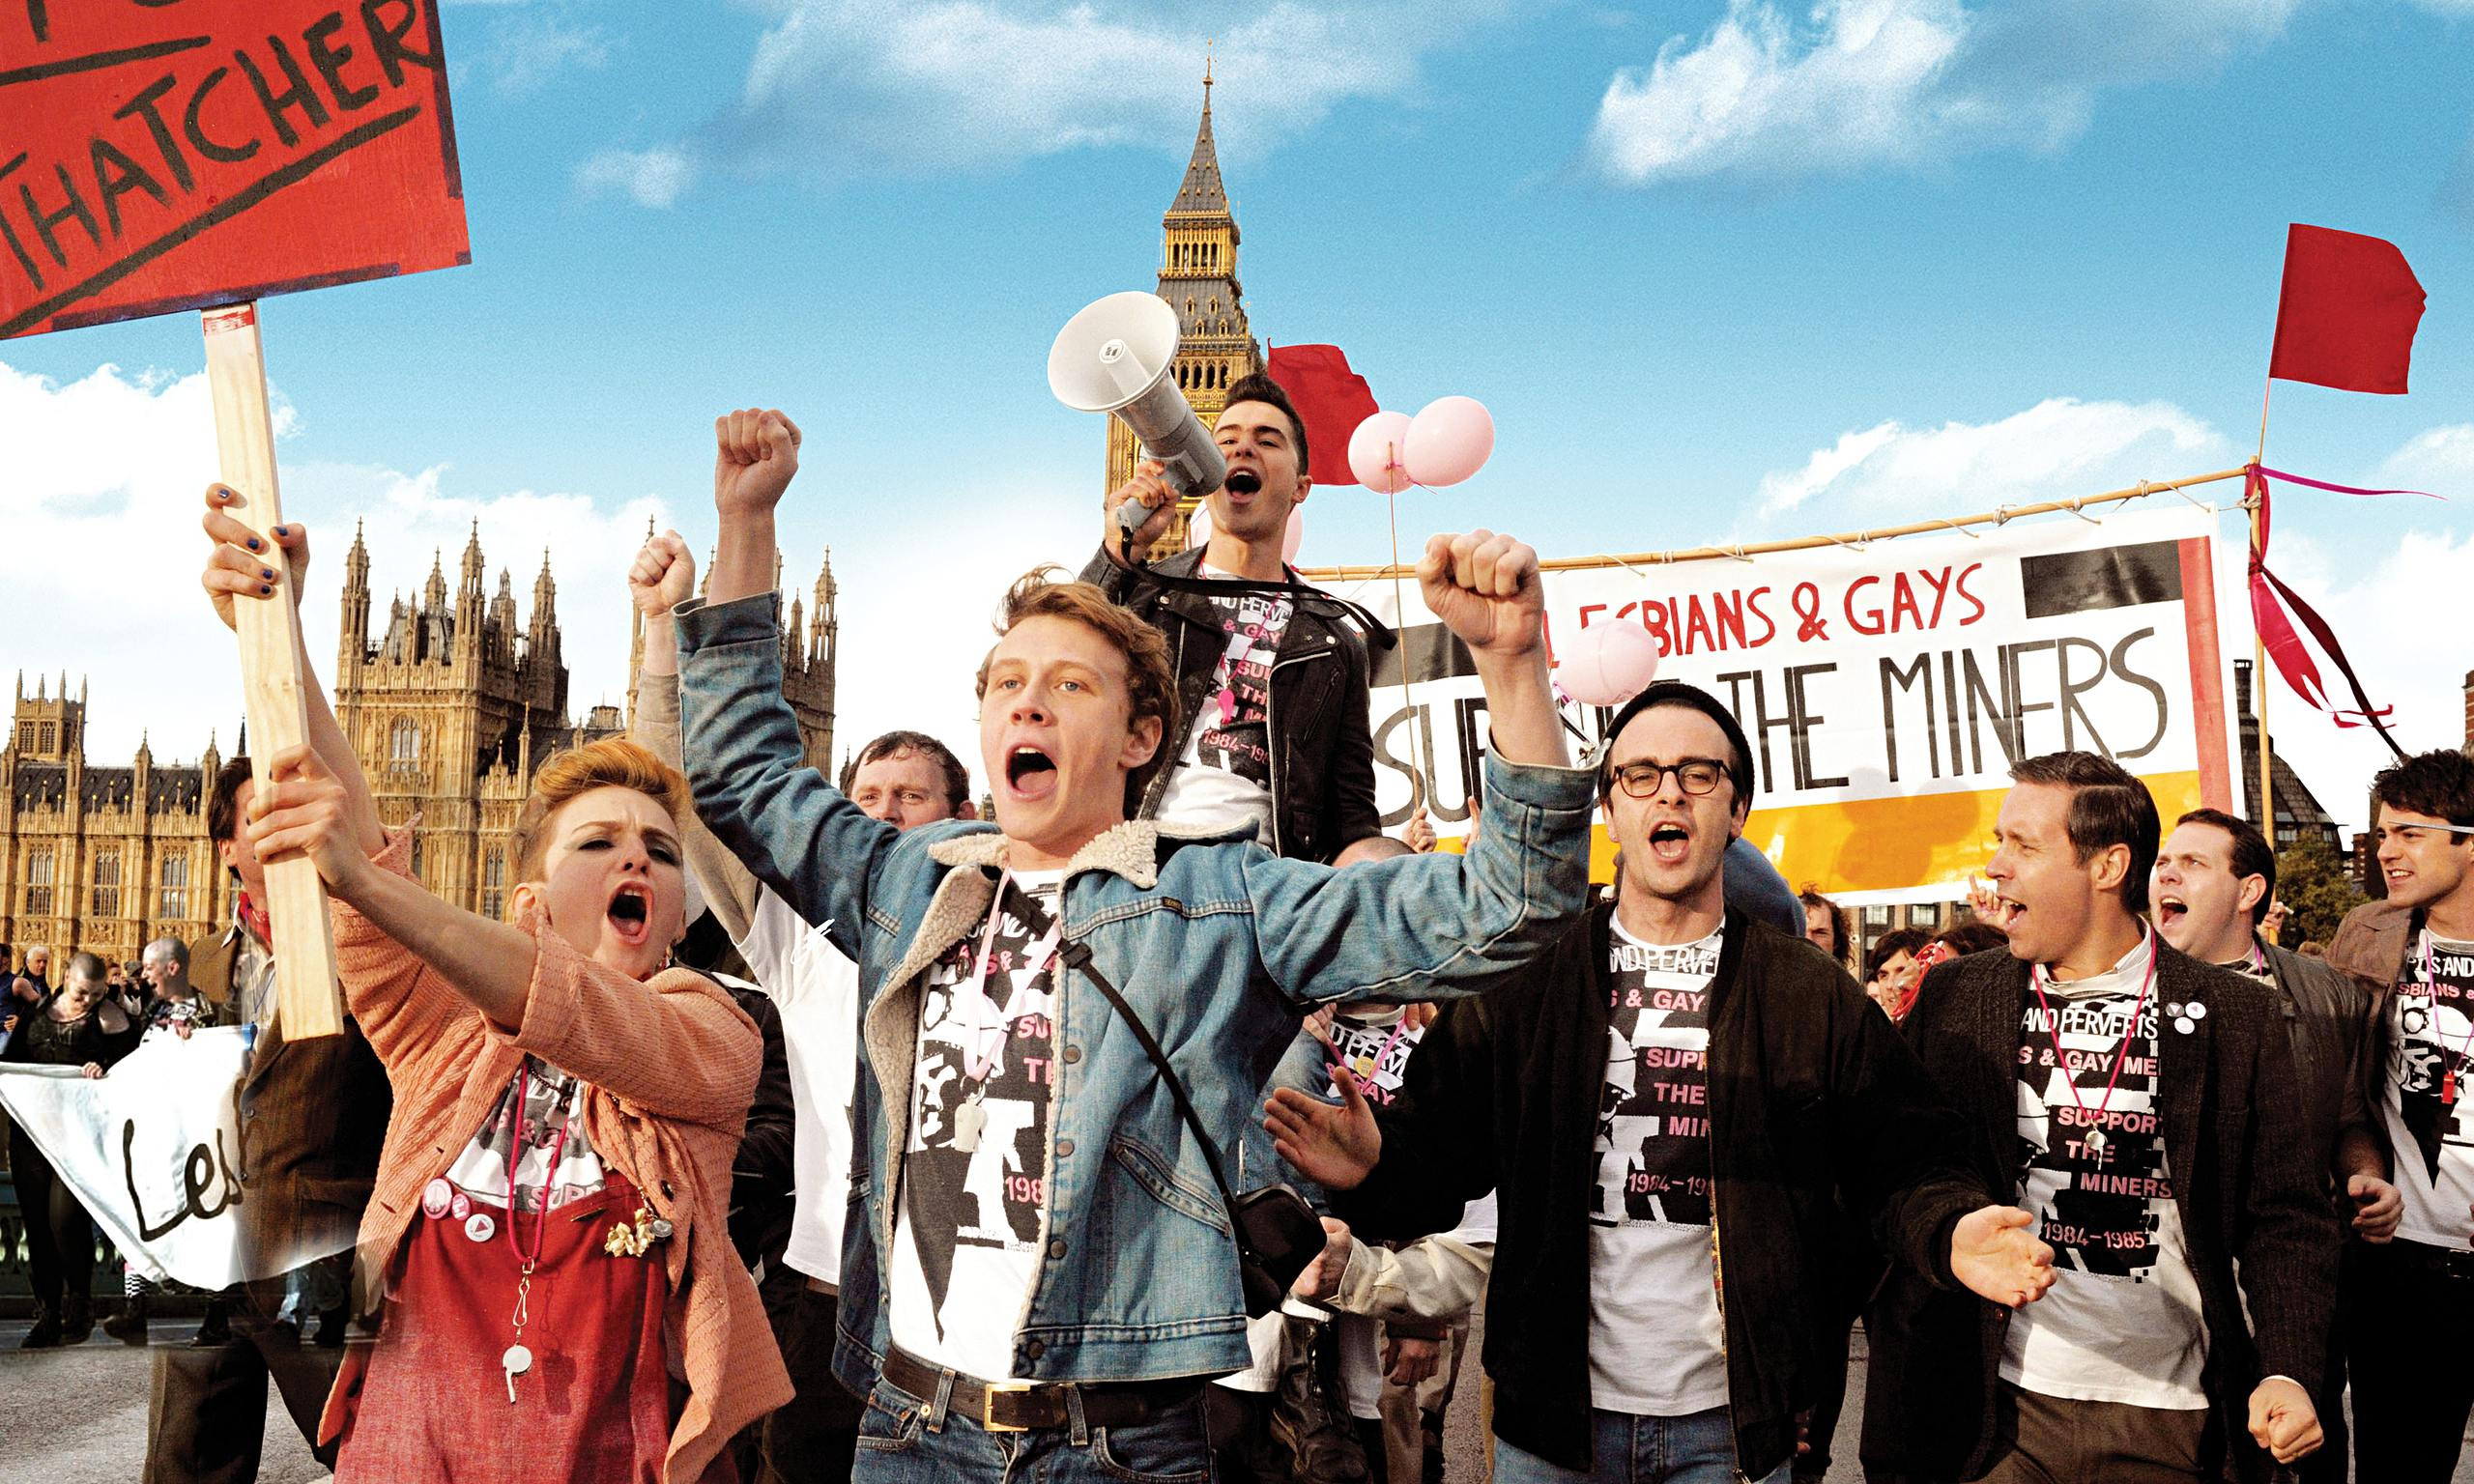 Όταν η ομοφυλοφιλική κοινότητα στήριξε την απεργία των ανθρακωρύχων: «Pride»